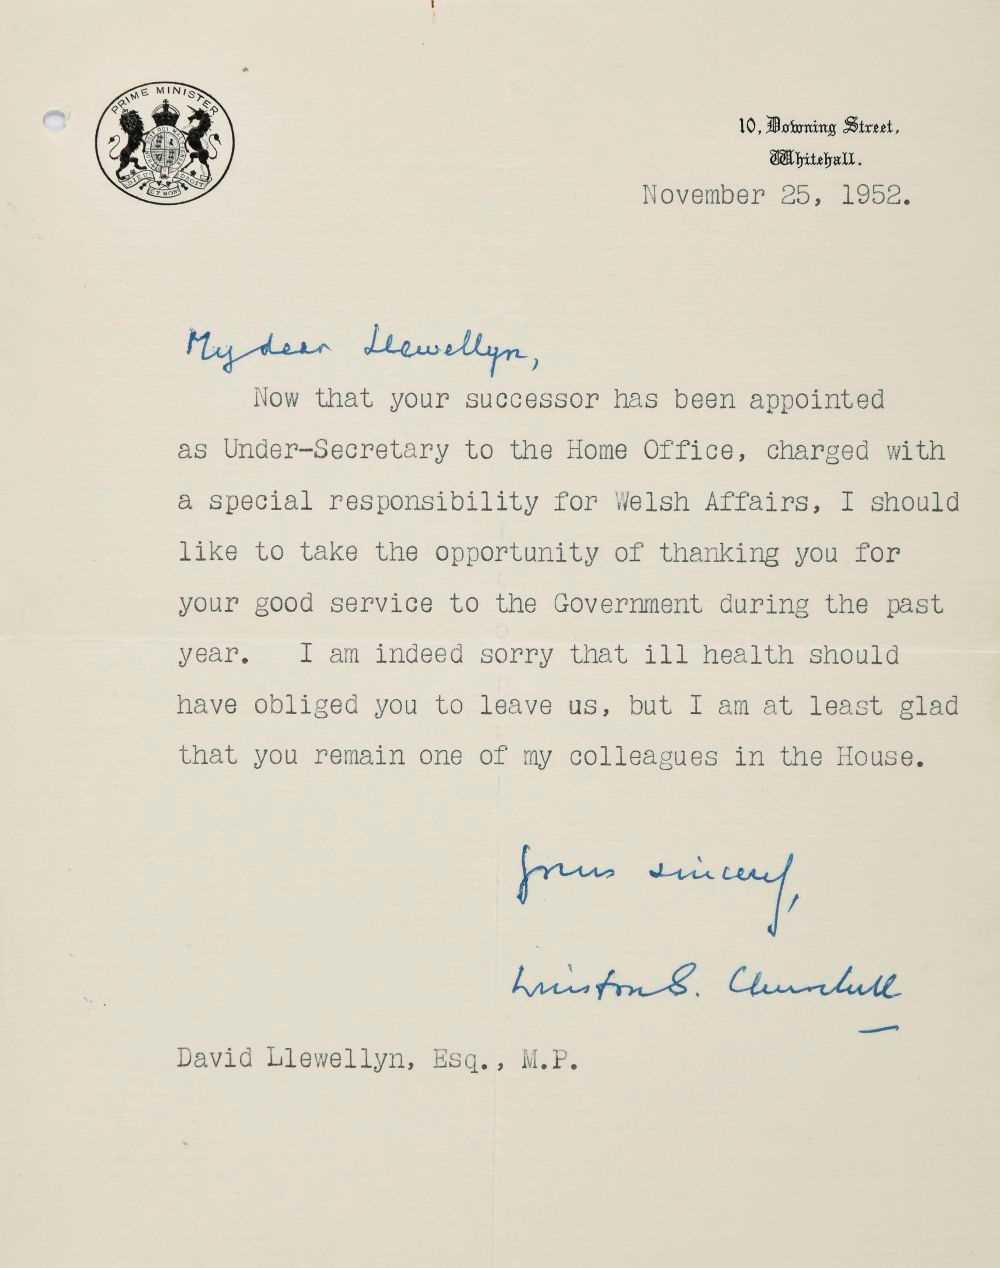 Lot 216 - Churchill (Winston Leonard Spencer, 1874-1965). Typed letter signed, 1952